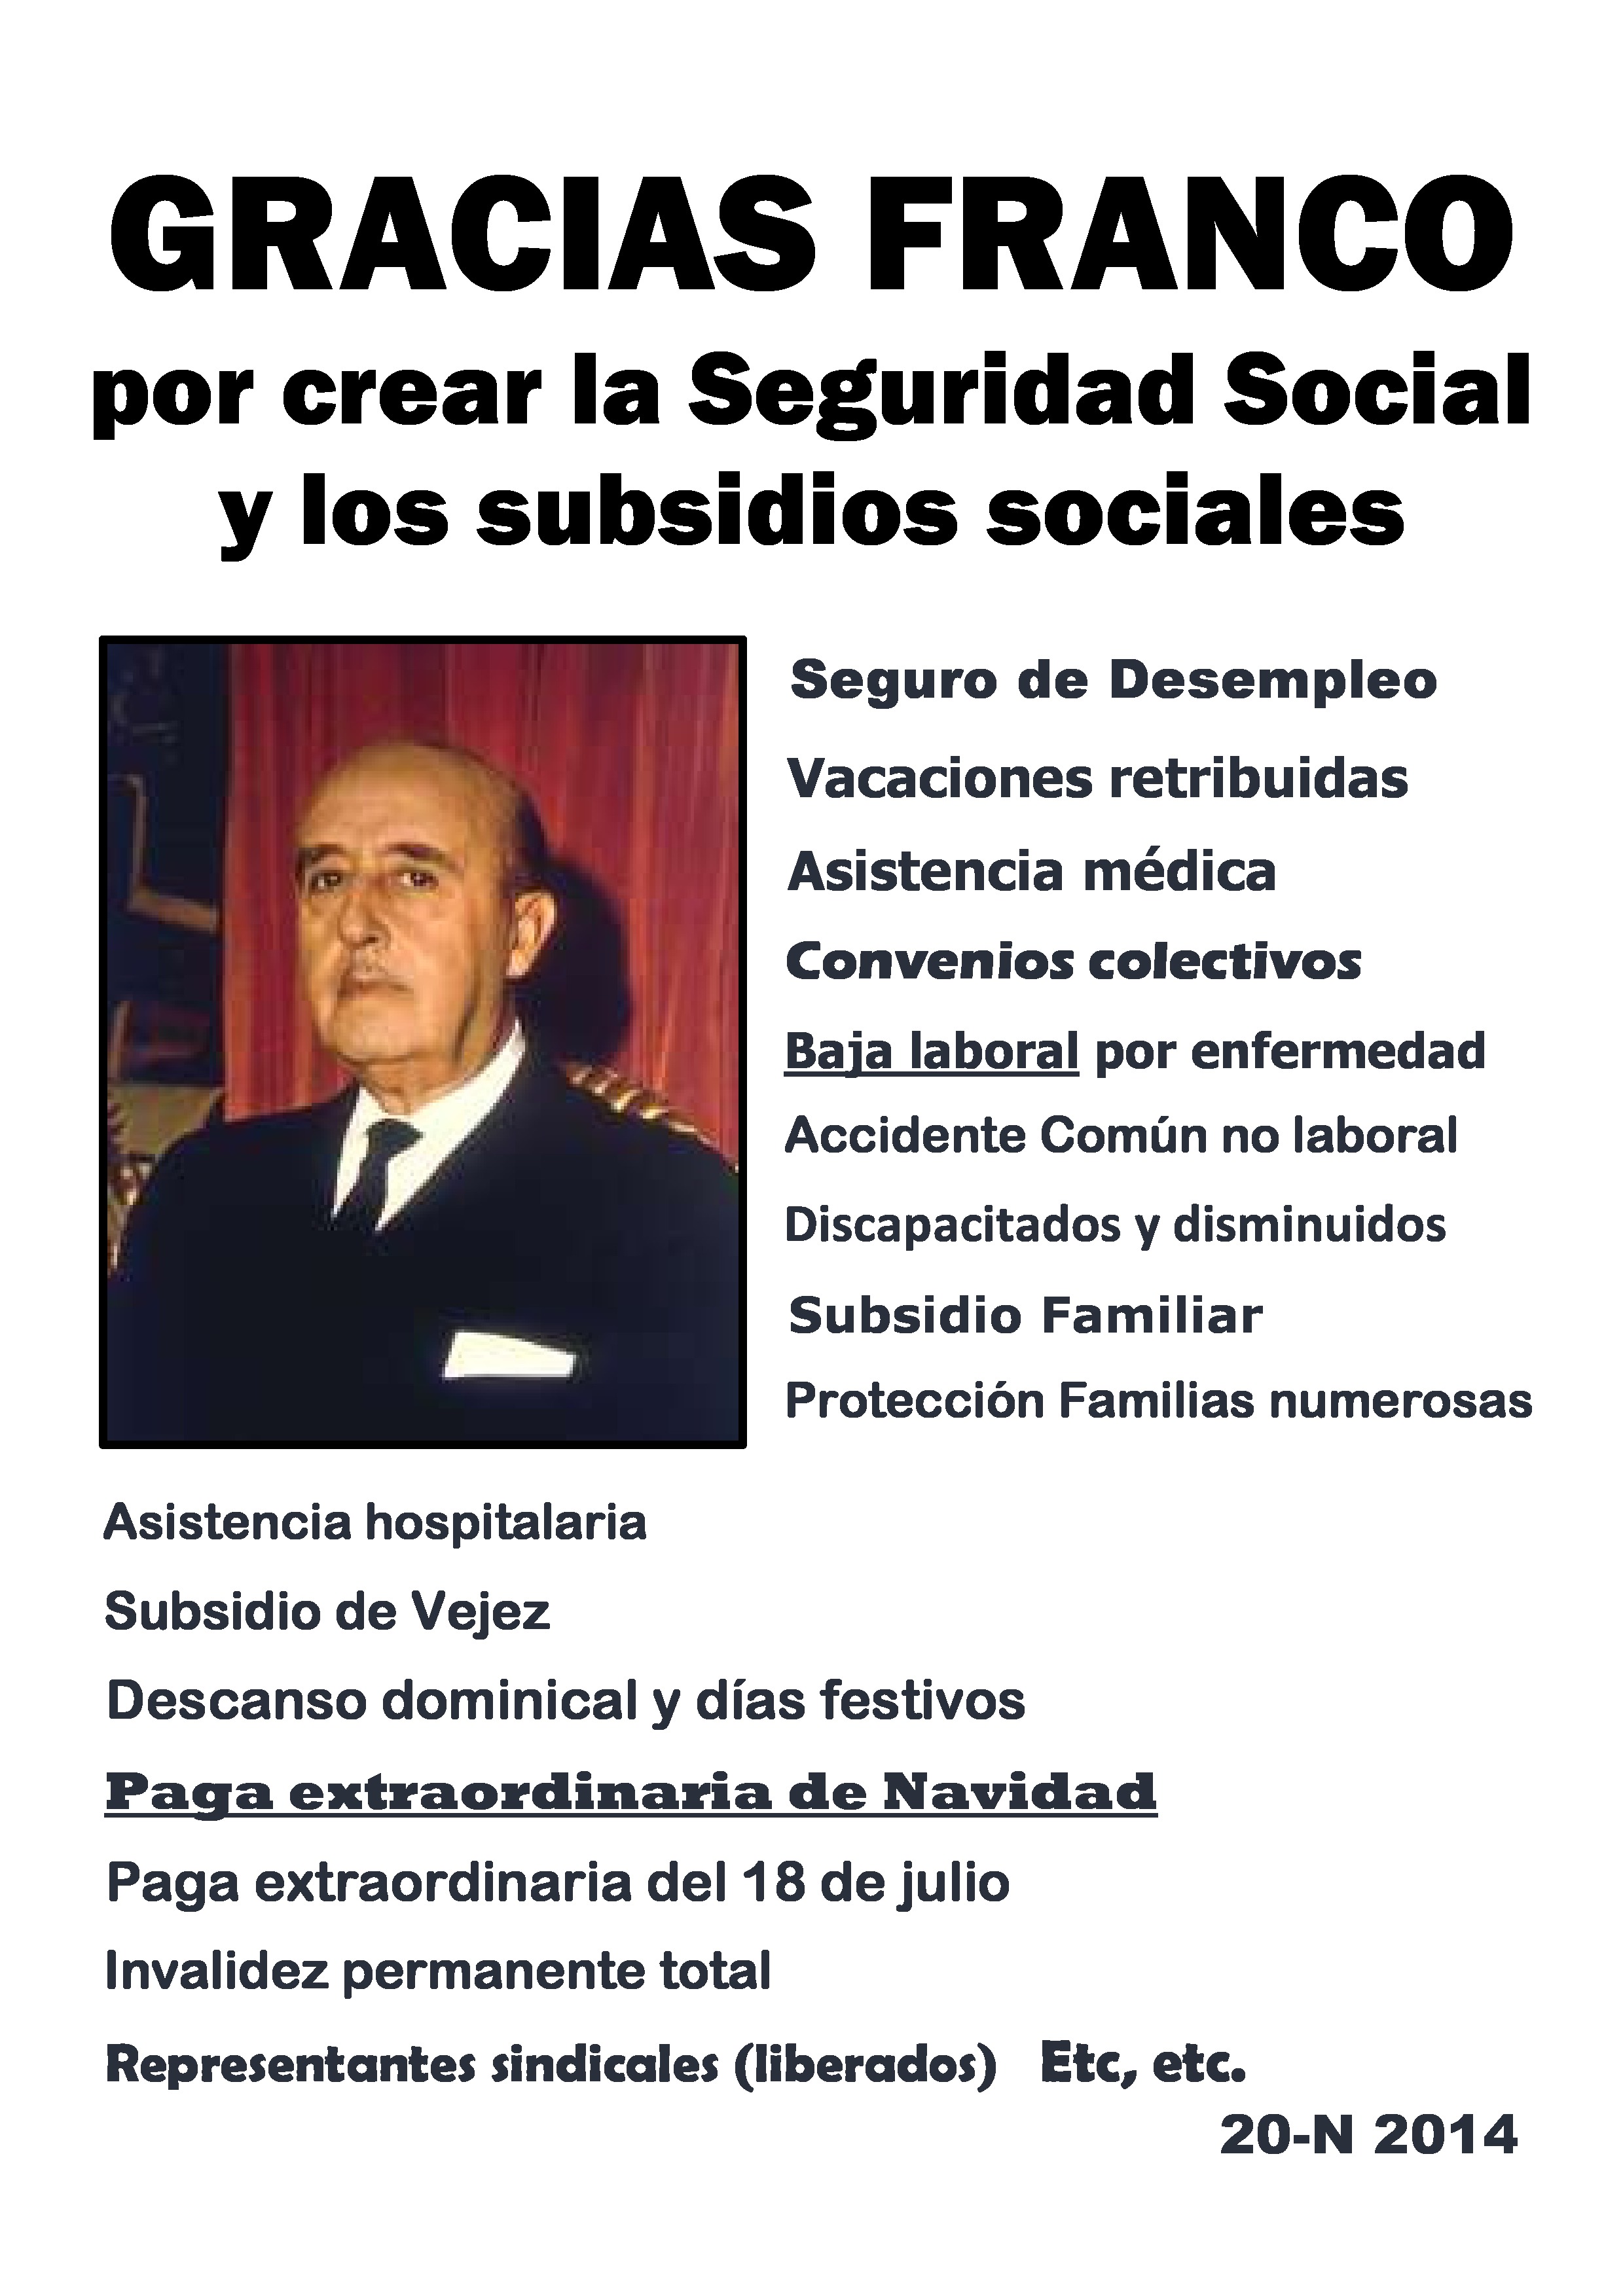 Gracias Franco por crear la Seguridad Social y los subsidios sociales